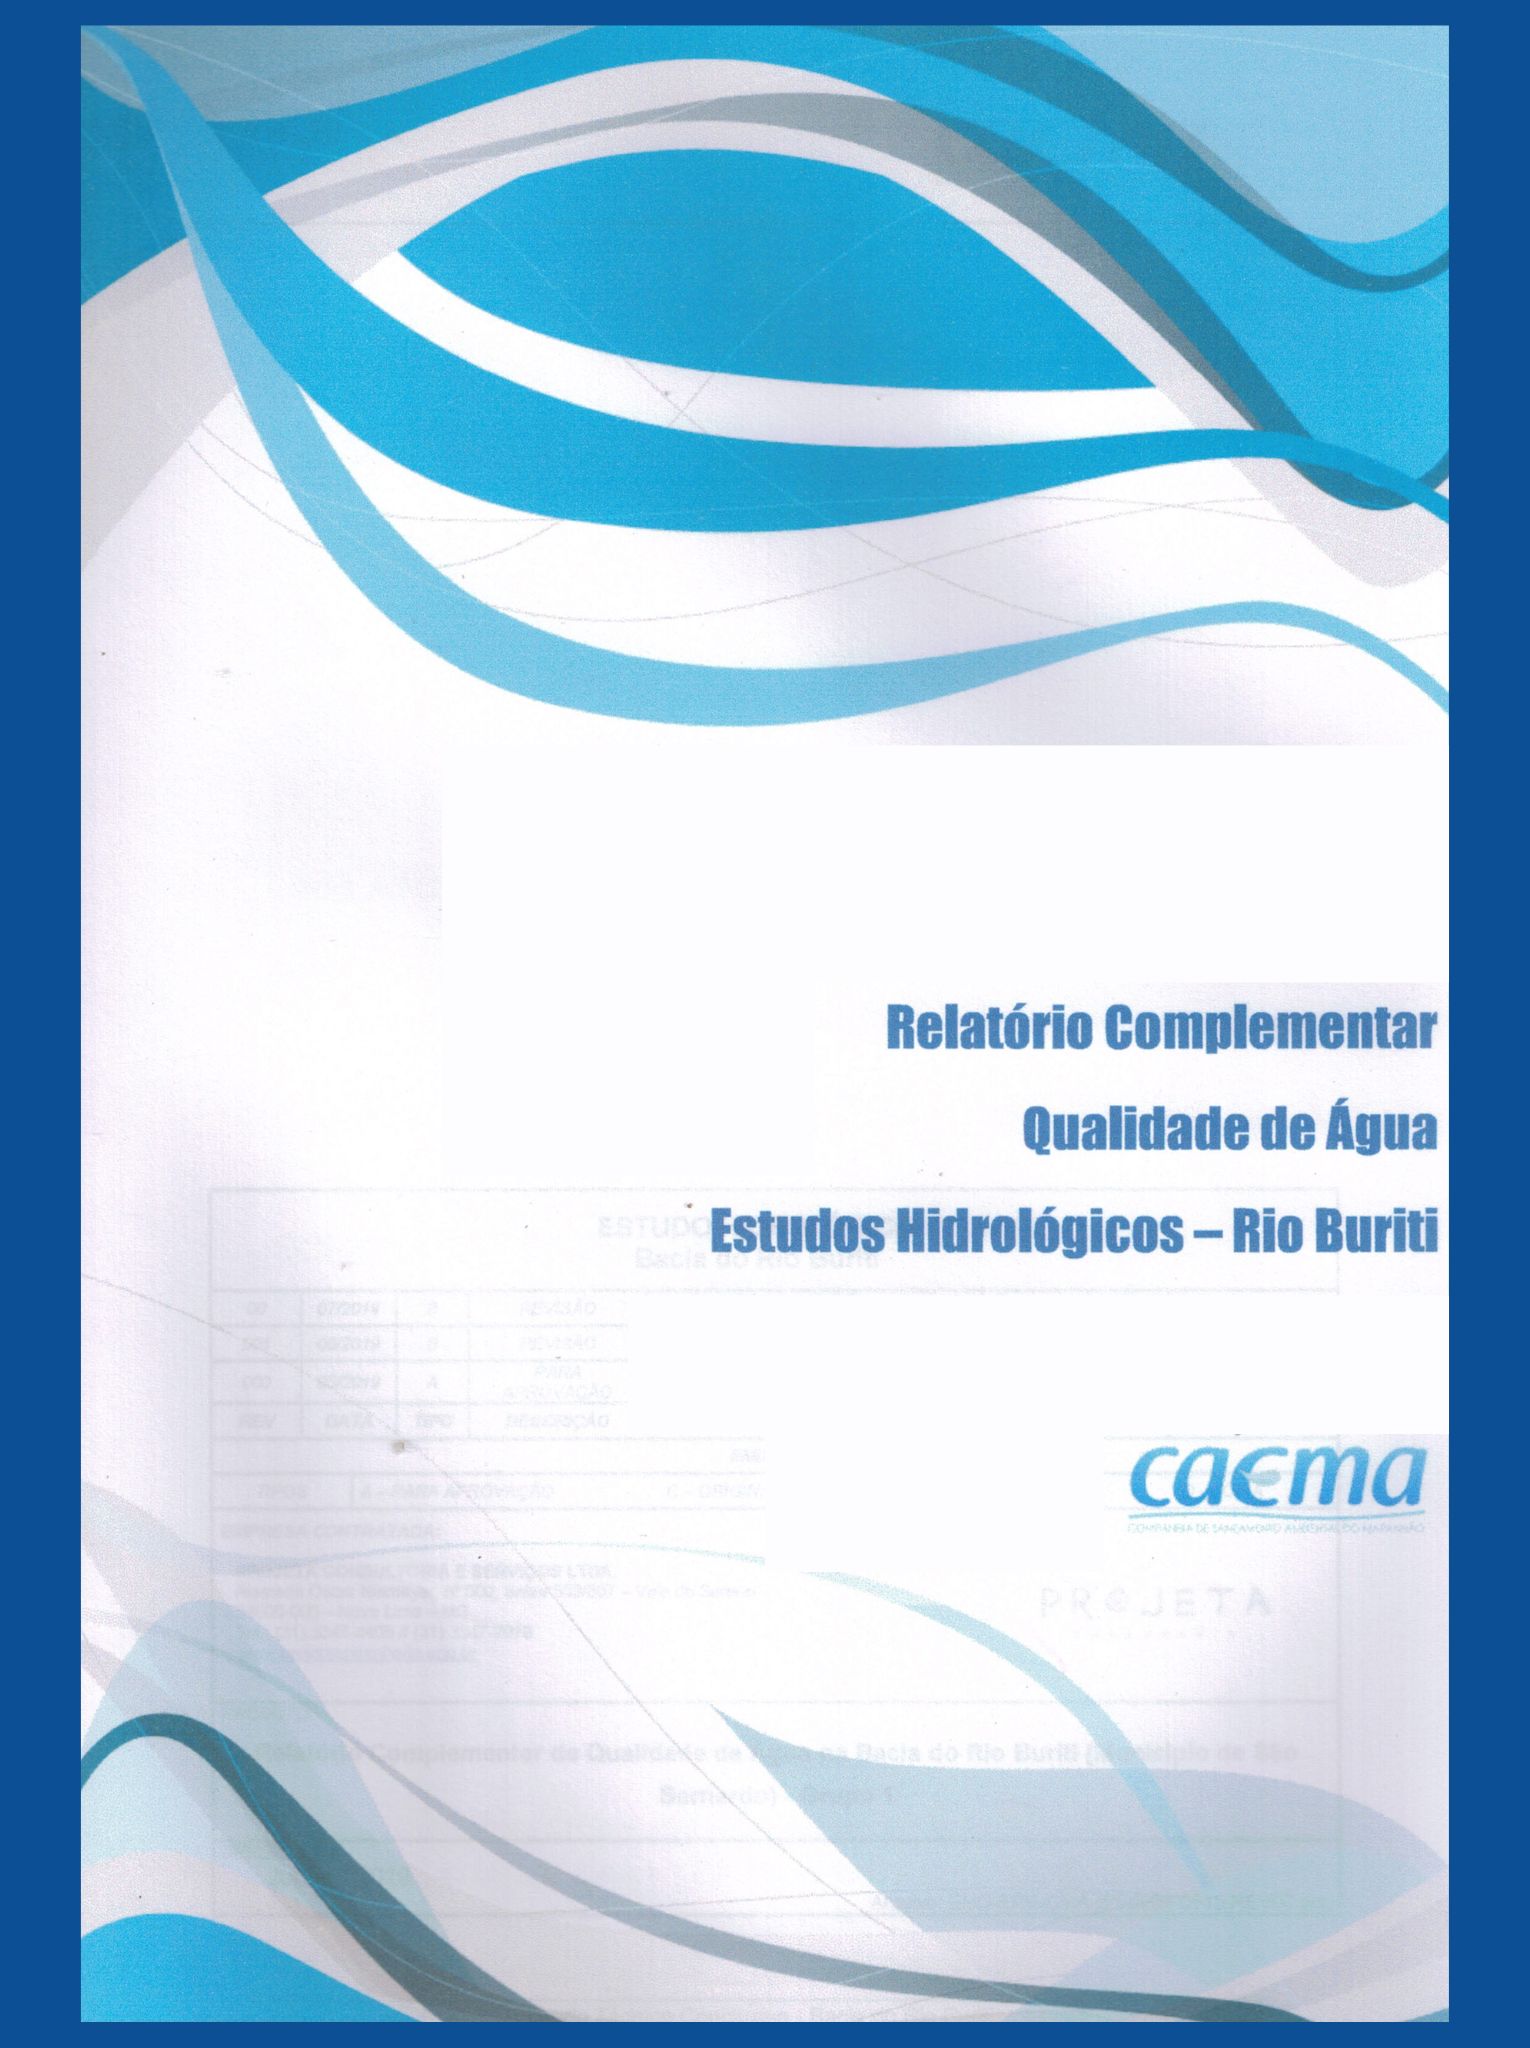 Imagem da capa do Estudo com informações de título e autoria.